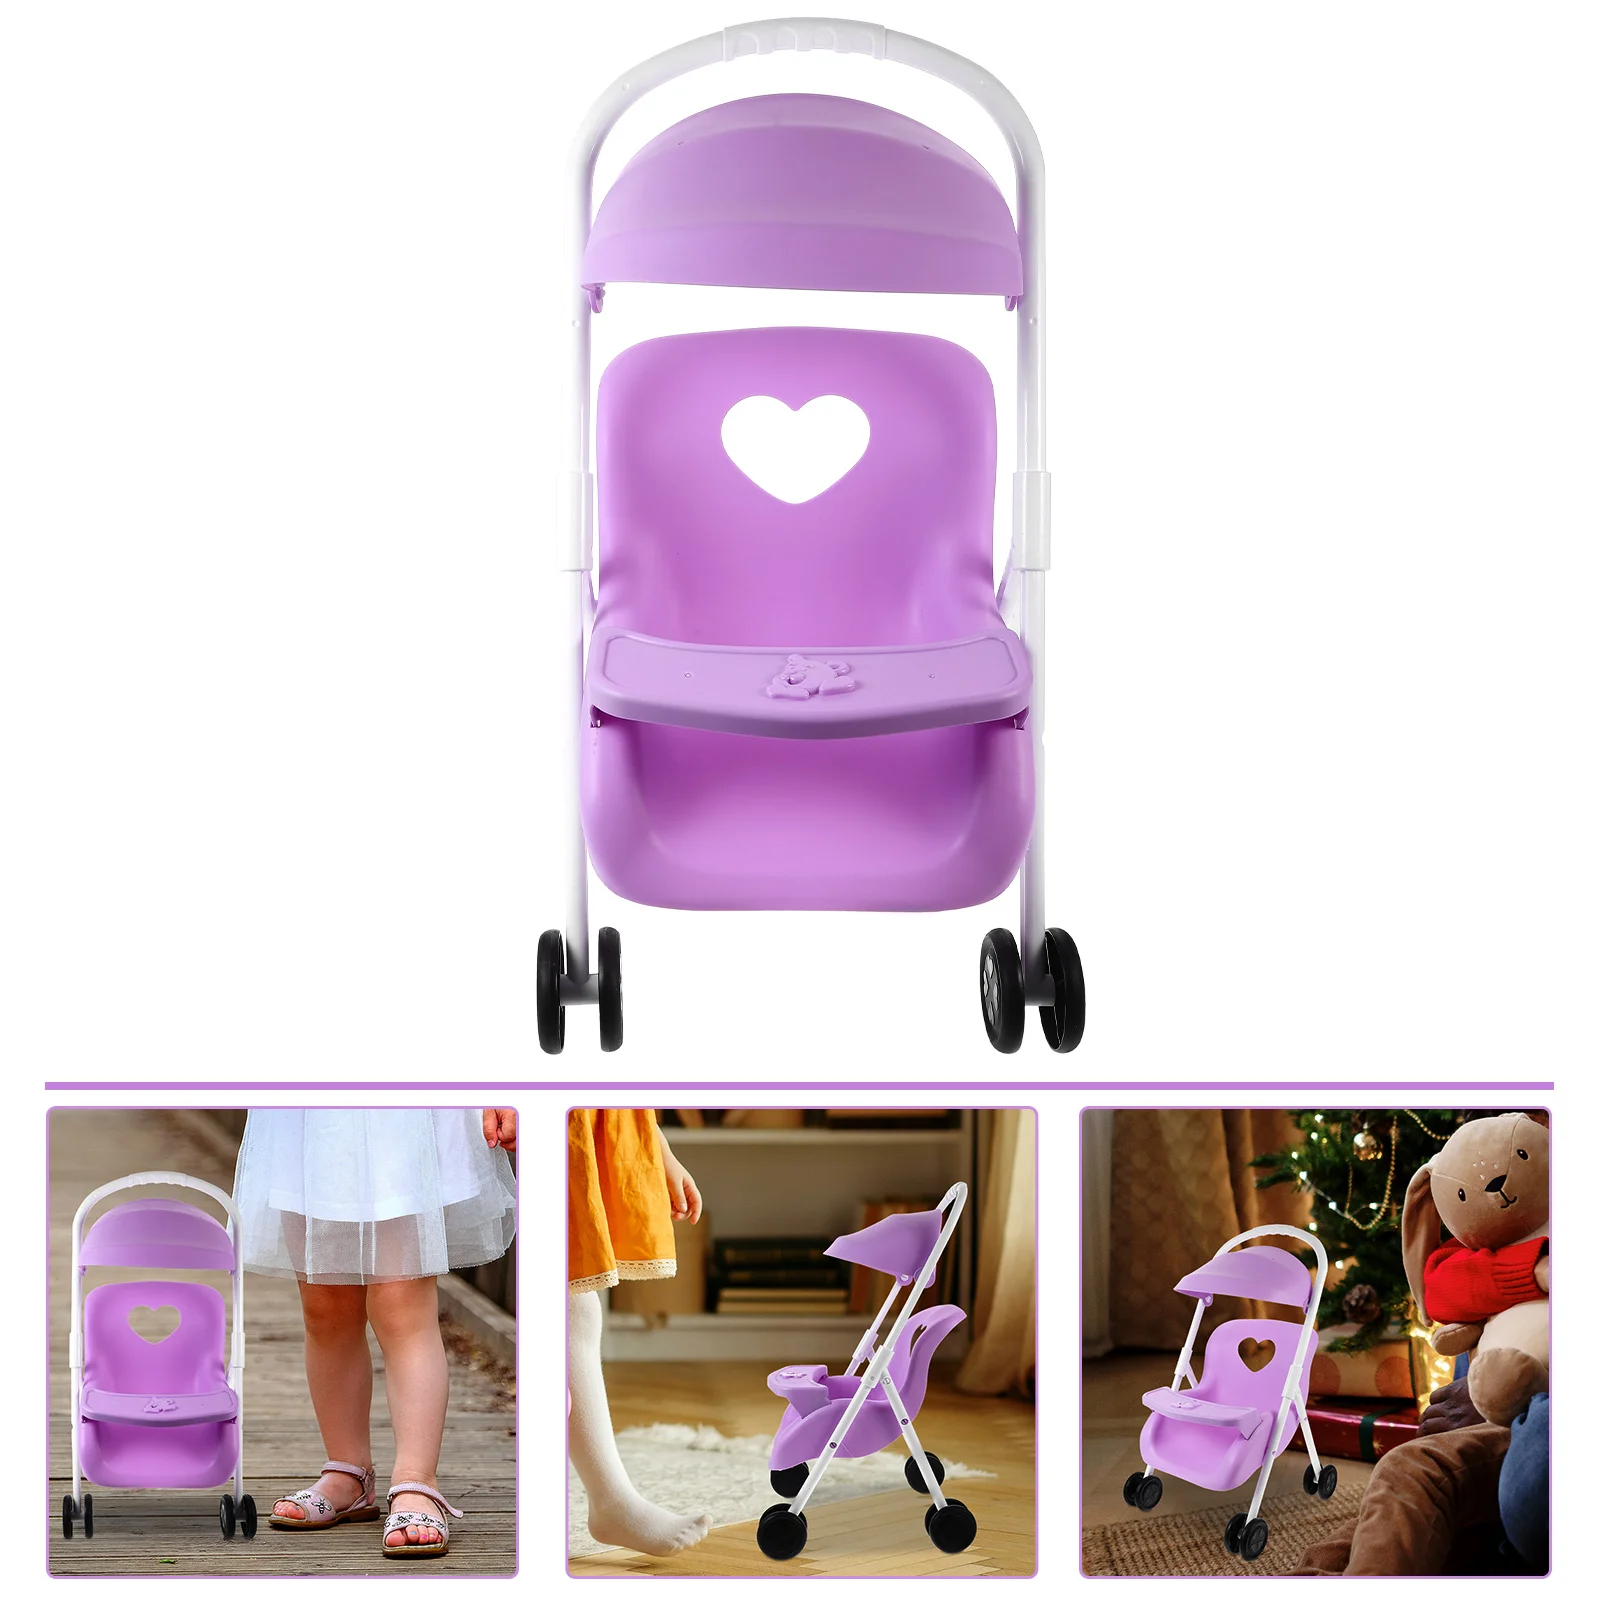 

Детская игровая коляска, имитация коляски, украшения для дома, детская коляска, кукла, детский домик, подвижная игра, пластиковая модель